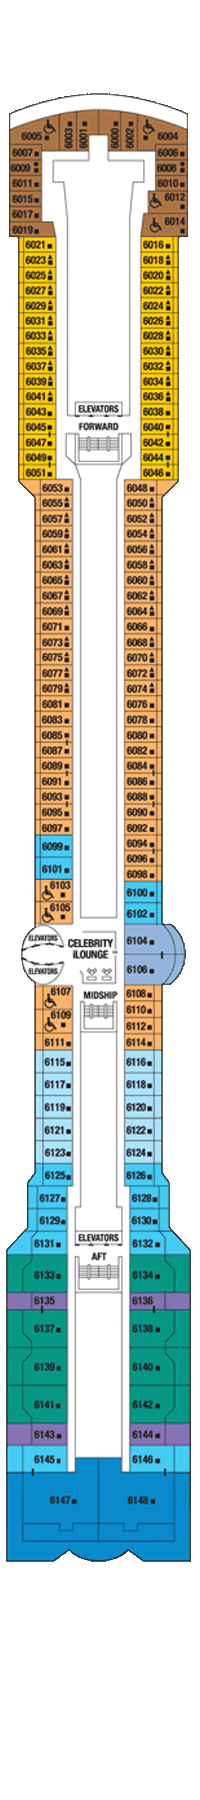 deckplan-celebrity-millinnium-deck-6